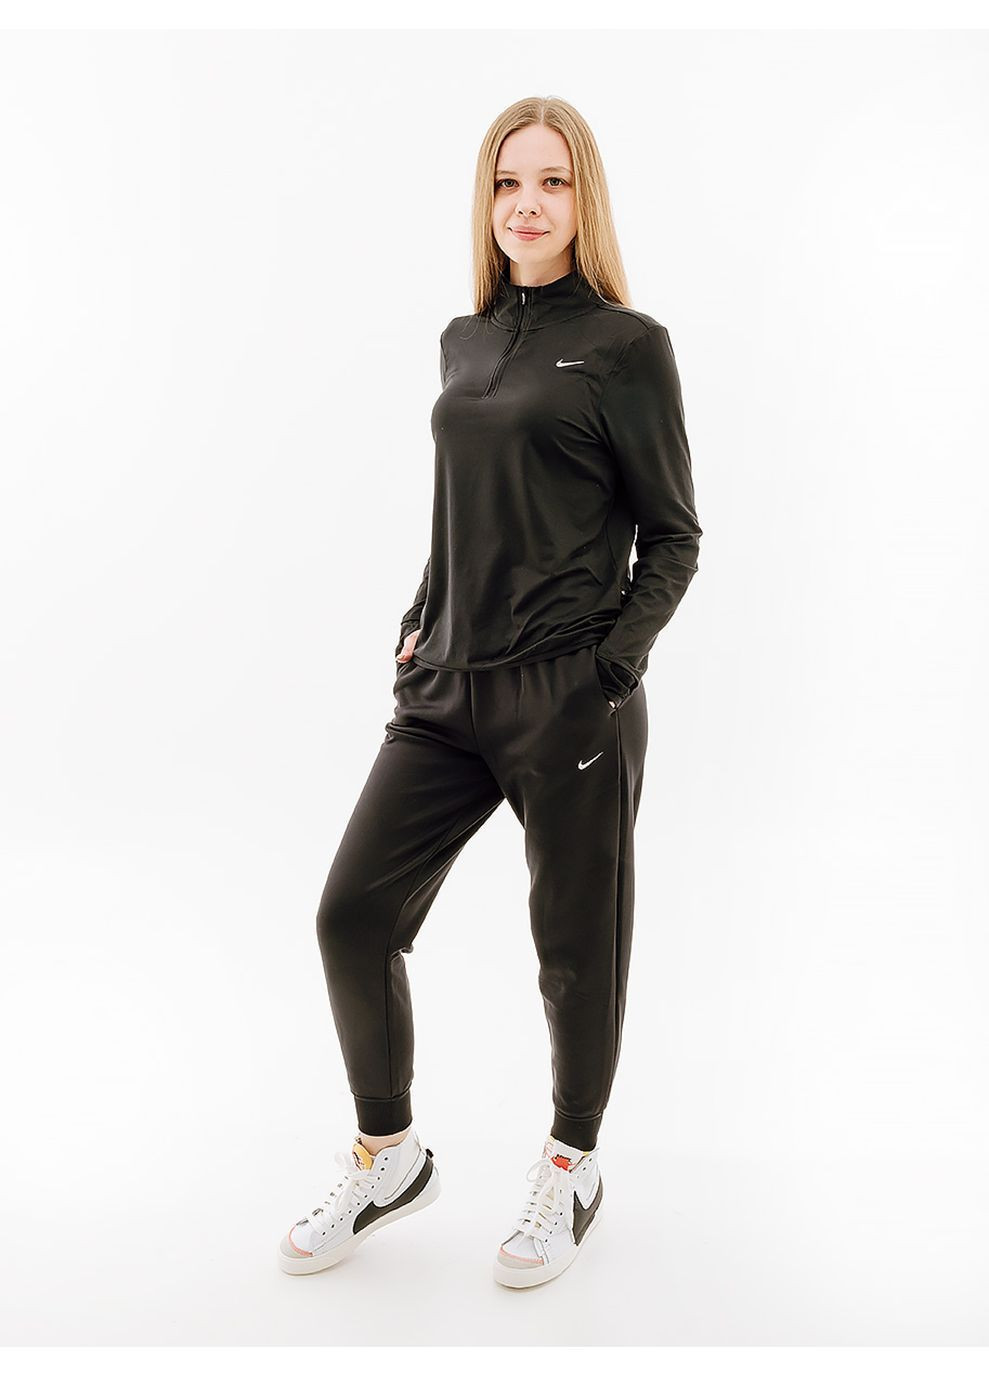 Женская Кофта SWIFT TOP Черный Nike (282615811)